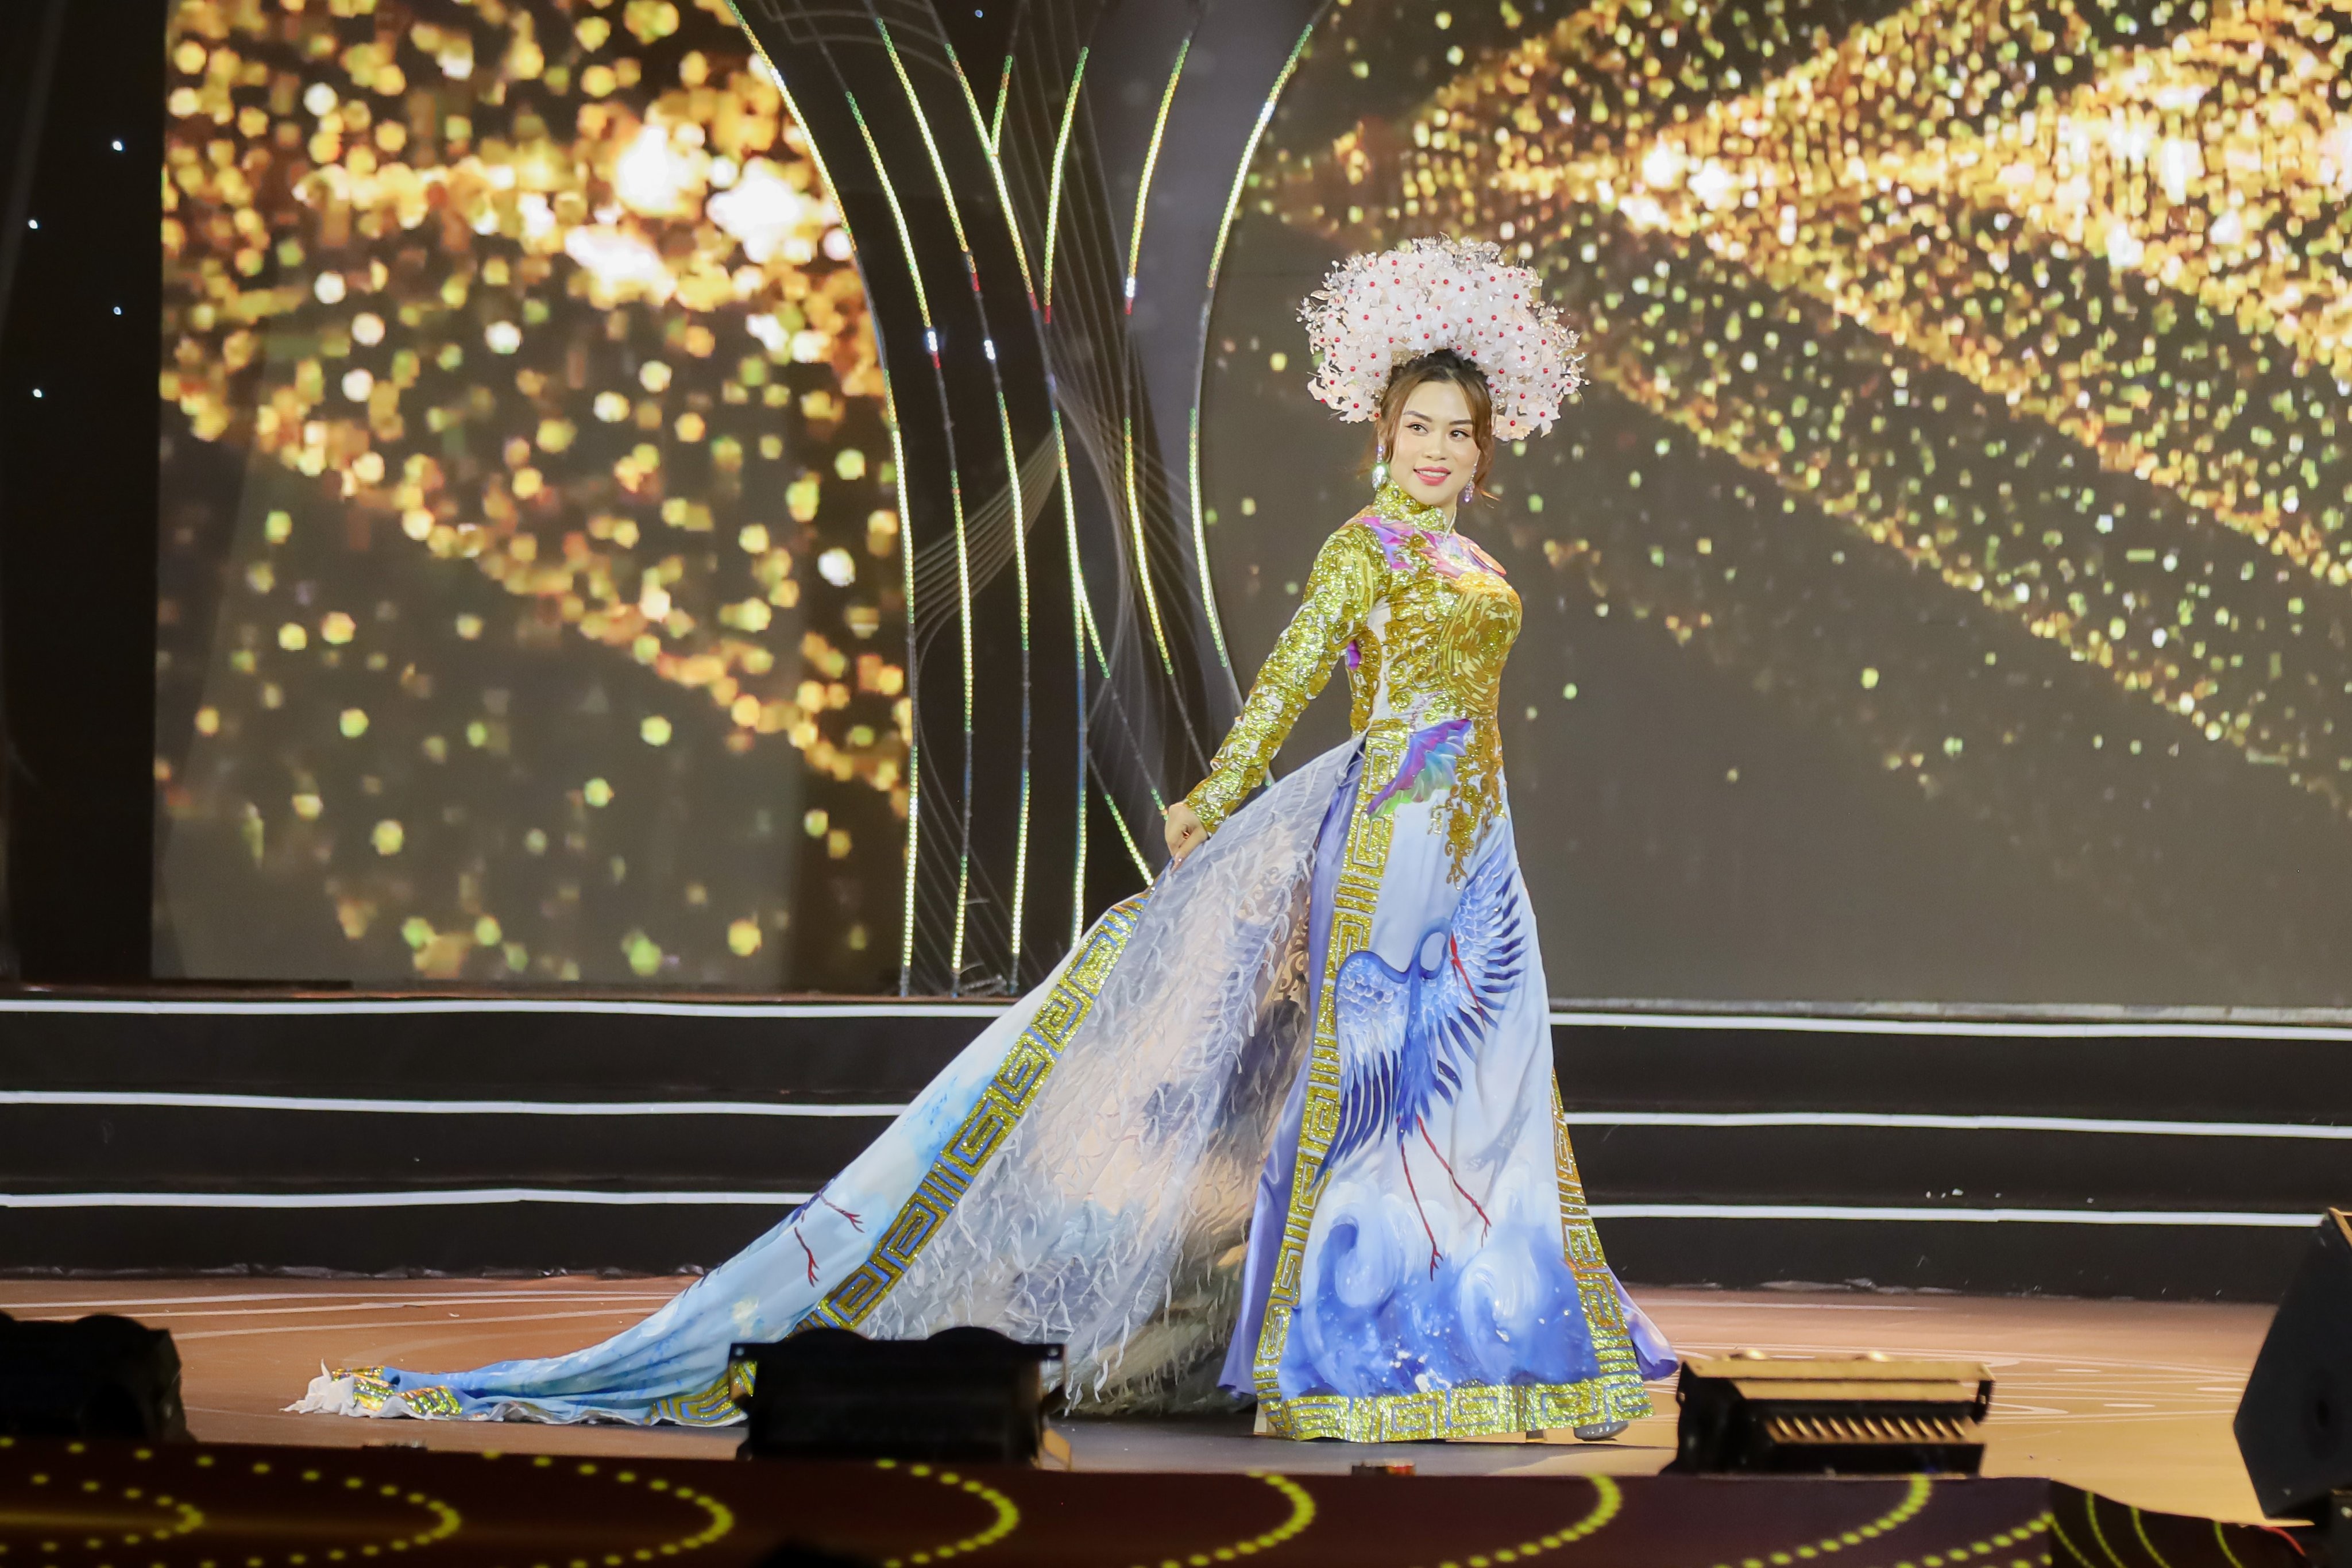 Nguyễn Thị An Minh đạt danh hiệu “Người đẹp Áo dài” Hoa hậu Doanh nhân Việt Nam 2022